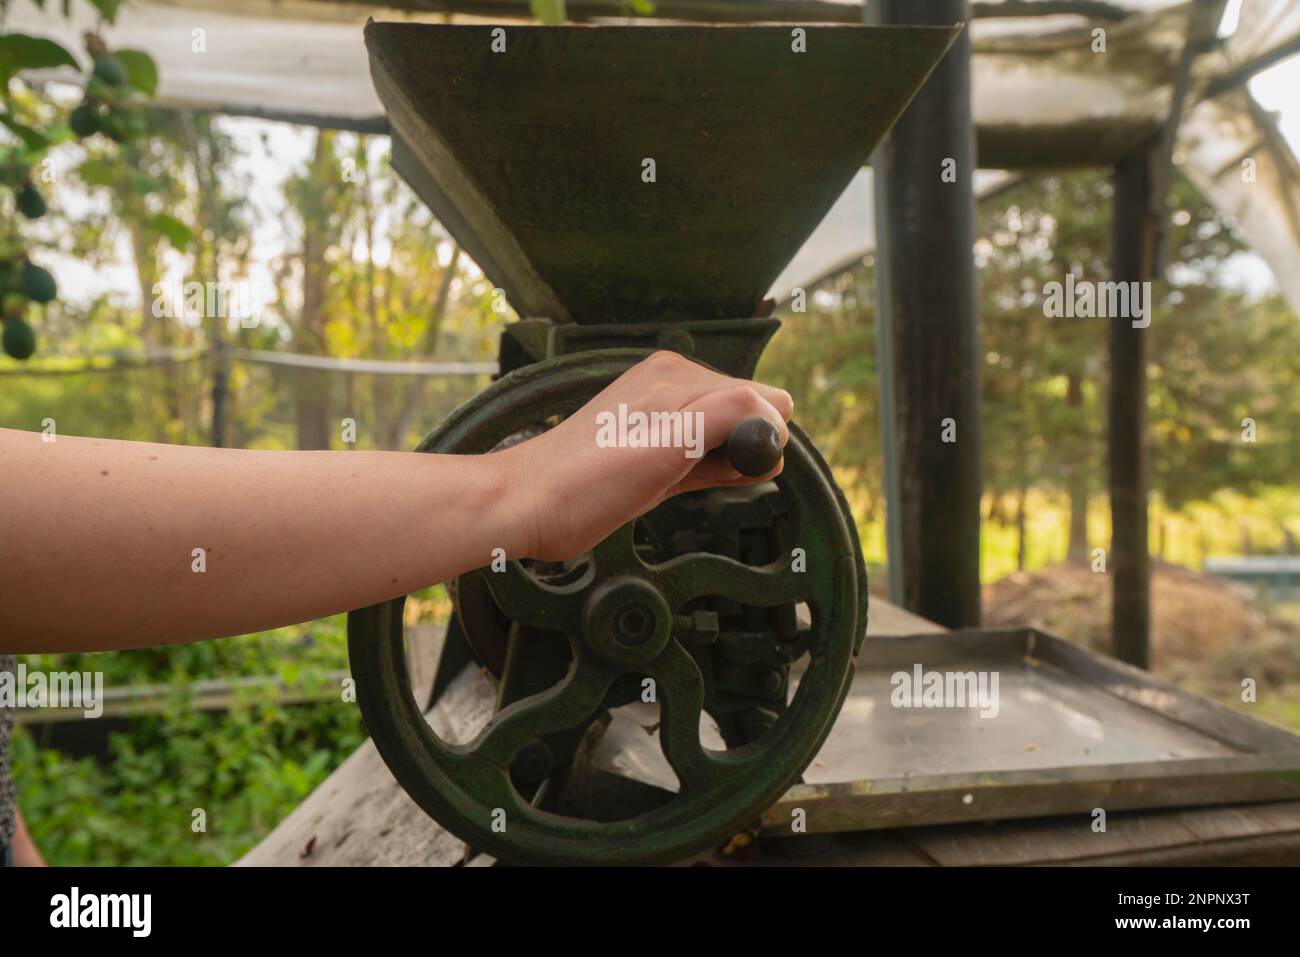 Primo piano della mano della donna che gestisce un piccolo mulino verde a manovella per macinare il caffè all'interno di una serra con piante verdi sfondo Foto Stock